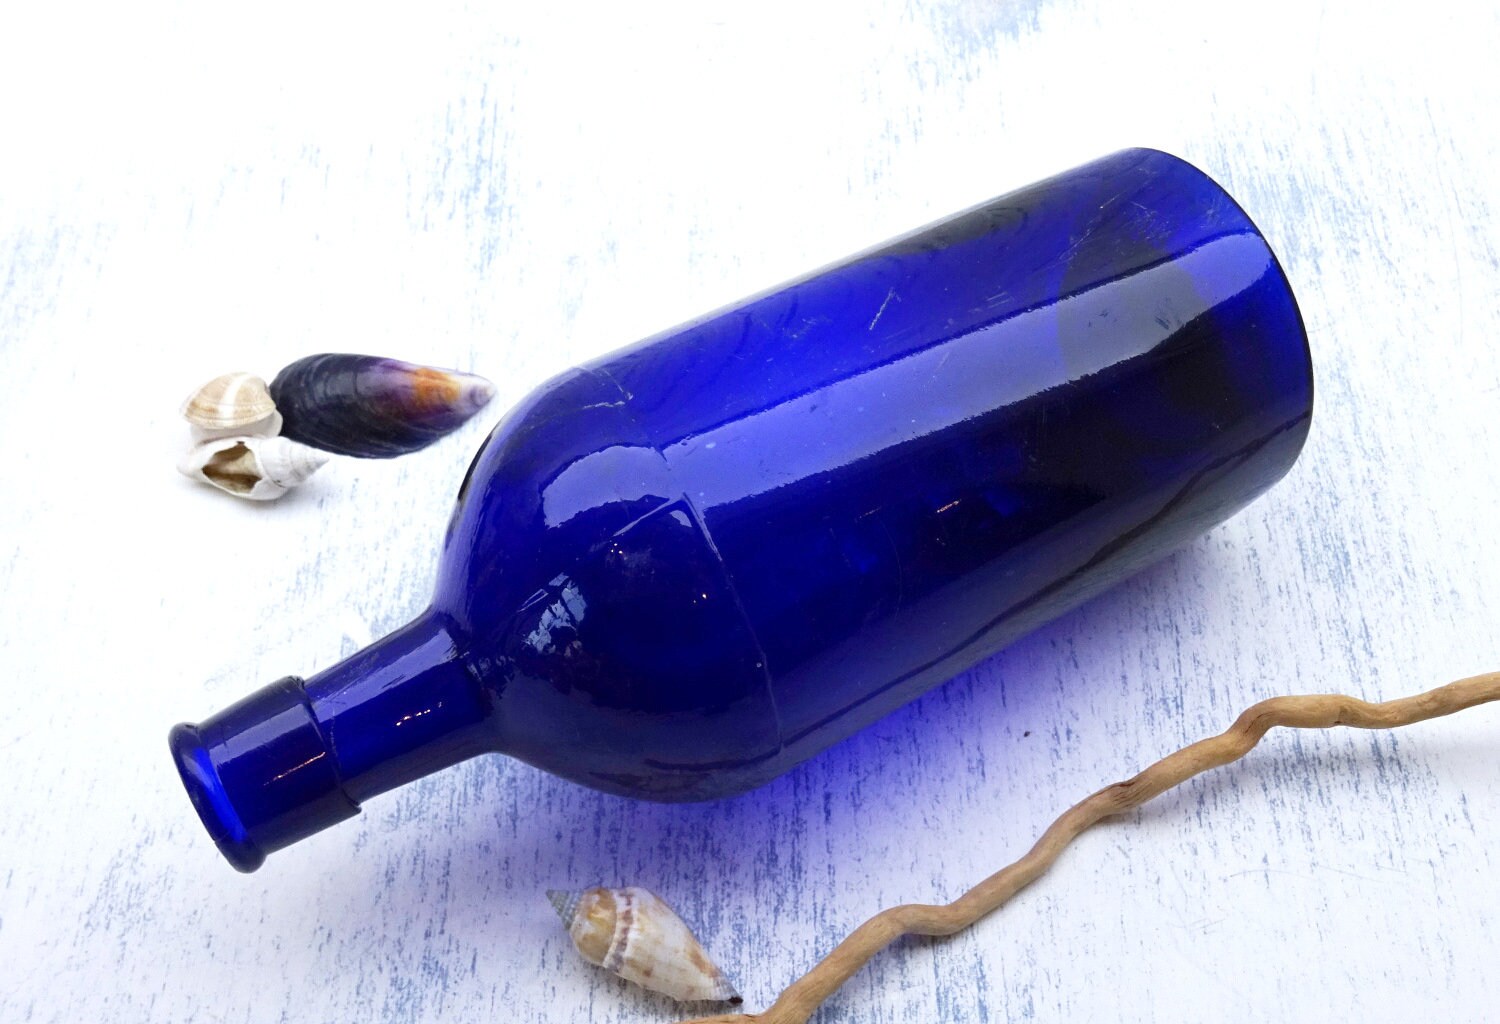 Antique cobalt blue bottles